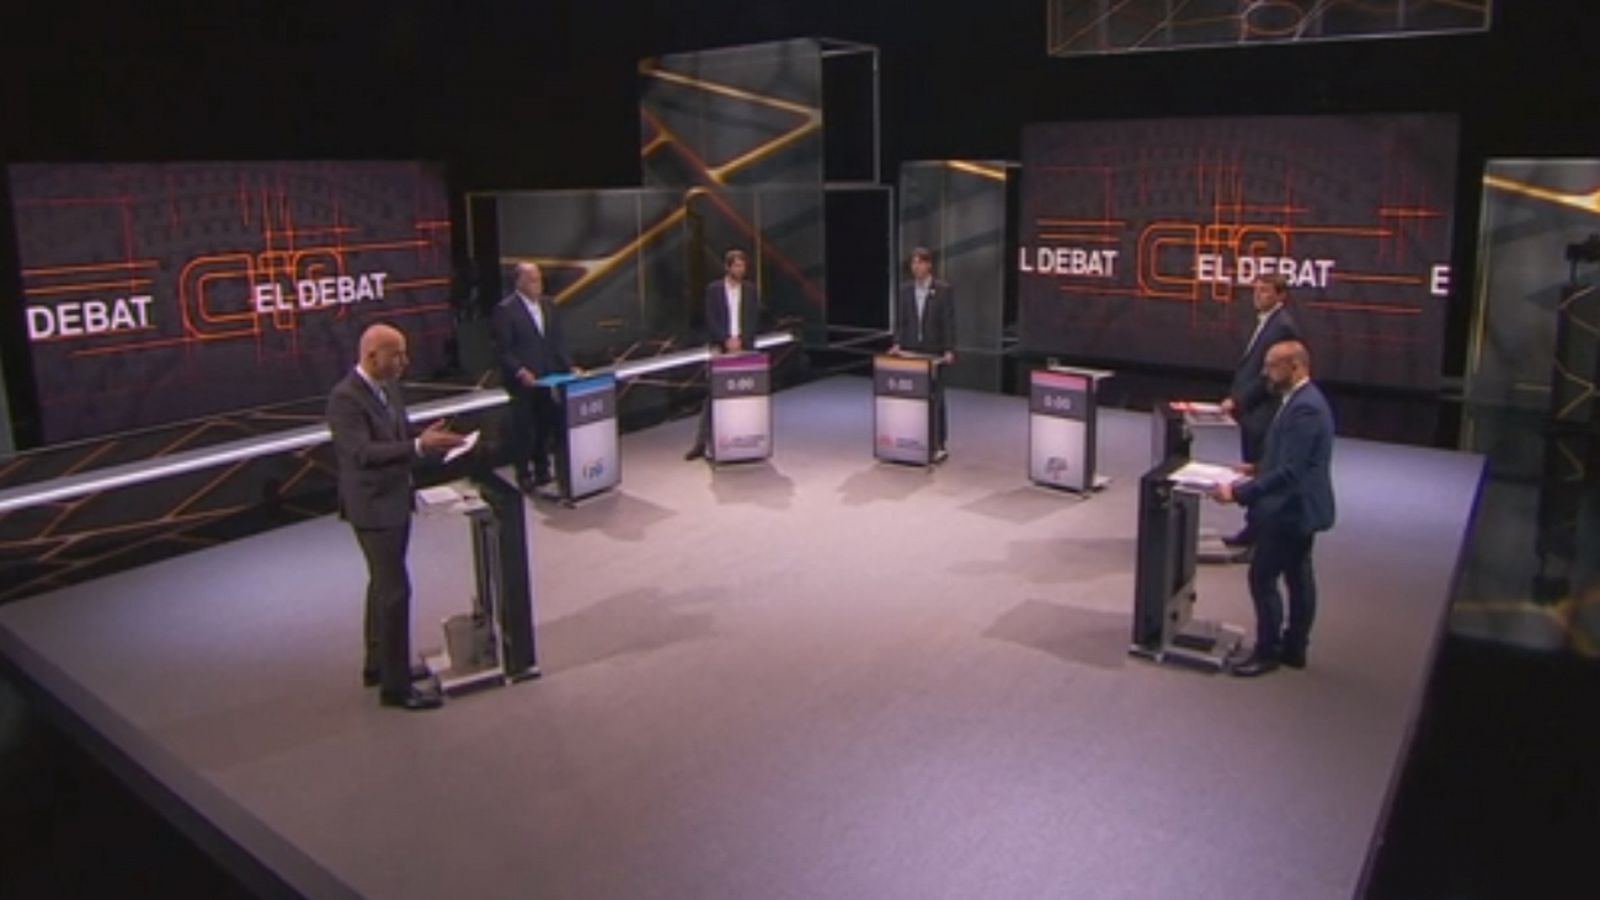 Elecciones europeas: El candidato de JxCat abandona el debate de TV3 en protesta por la decisión de la Junta Electoral